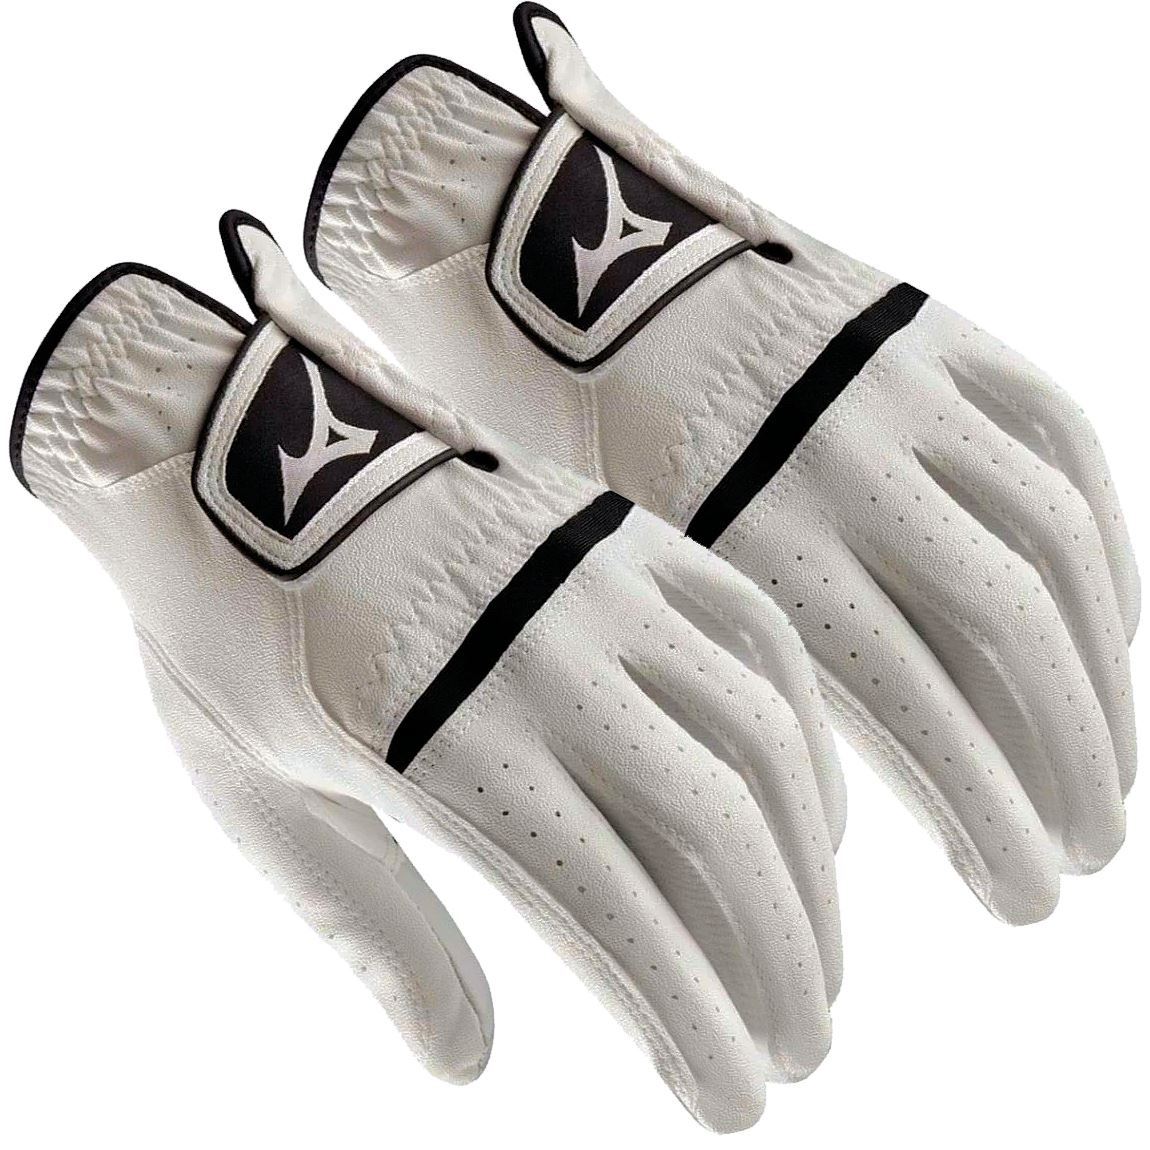 Pracht goud Vrijgevig Mizuno Mens Comp Golf Gloves *Special 2 for £12